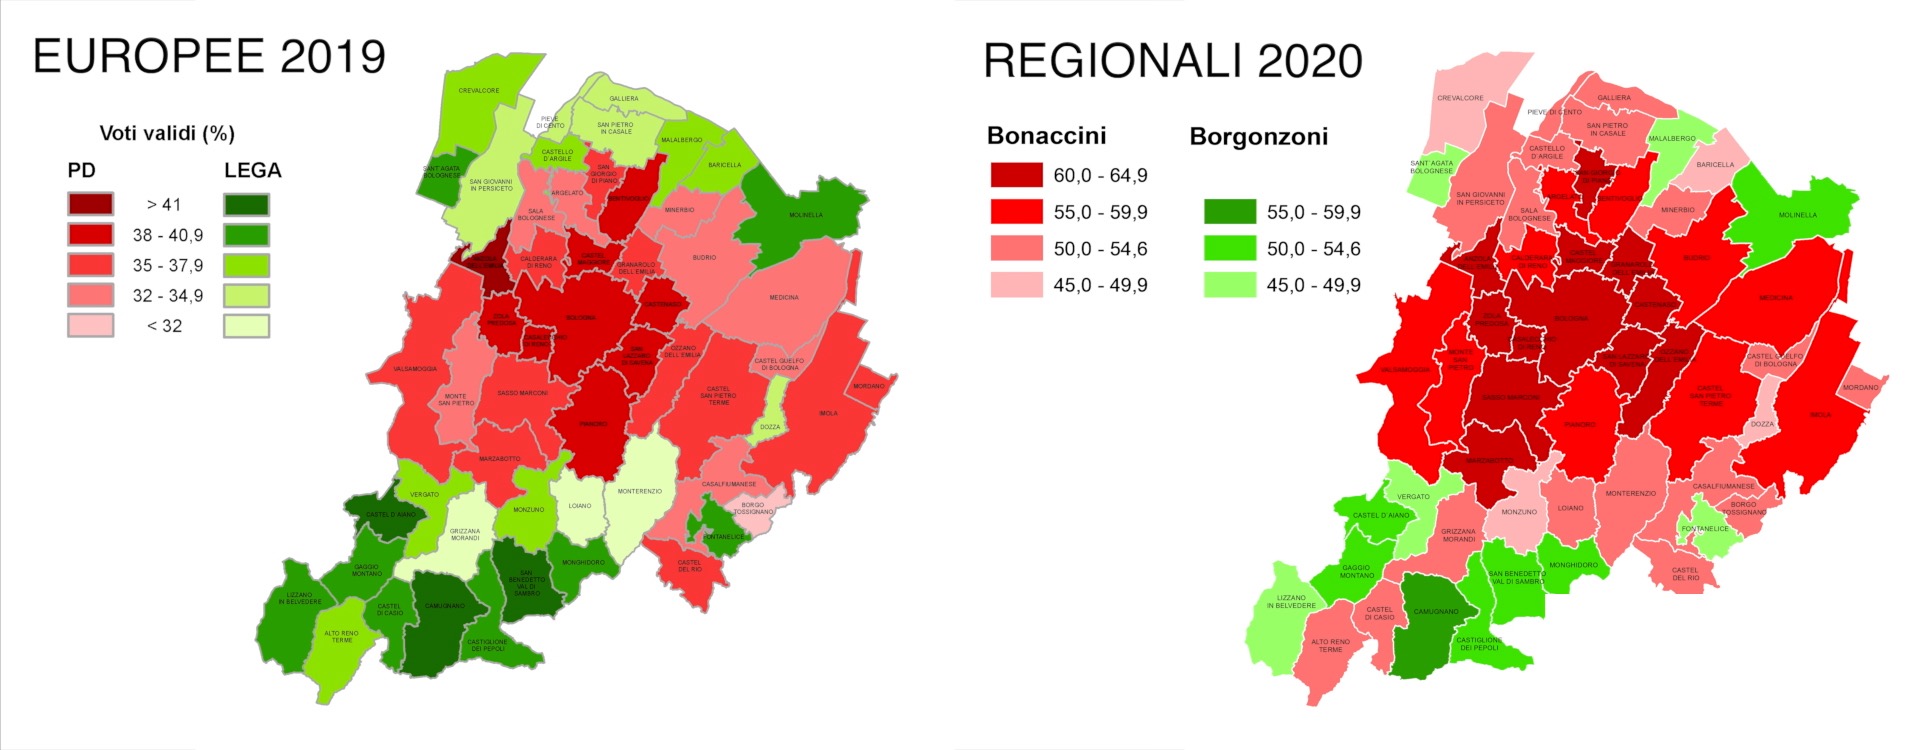 Mappe dei voti nelle elezioni europee 2019 e regionali 2020